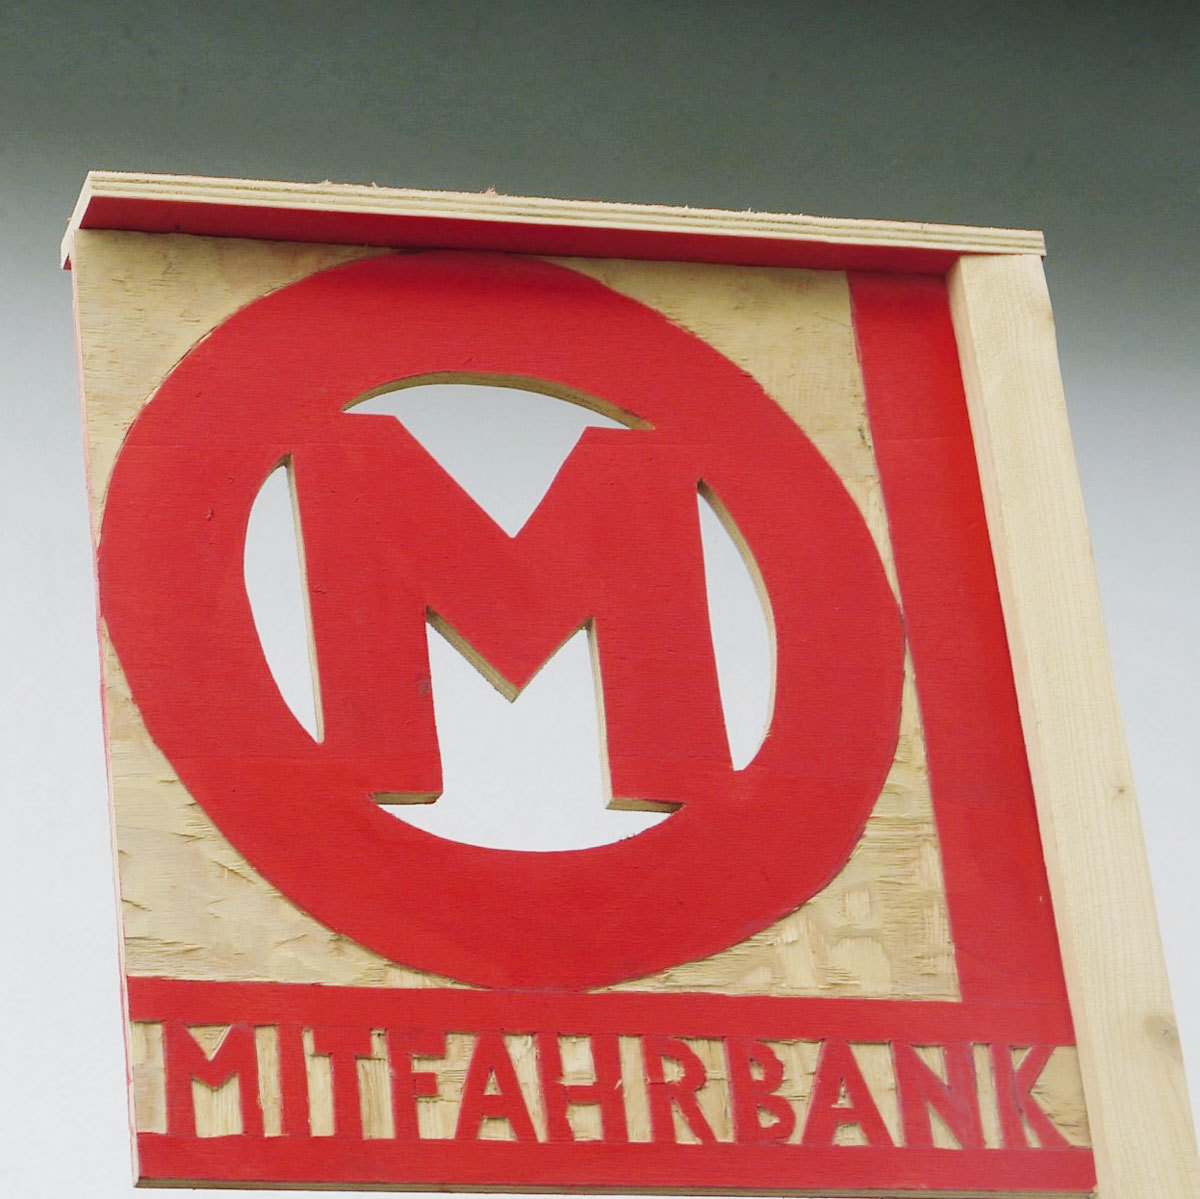 Eine rechteckige helle Holzplatte ist mit ausgesägtem Logo und Buchstaben versehen. Oben prangt in Rot der Buchstabe »M« in einem roten Kreis mit weißer Füllung, unten ist zwischen zwei roten Linien das Wort »MITFAHRBANK« zu lesen.